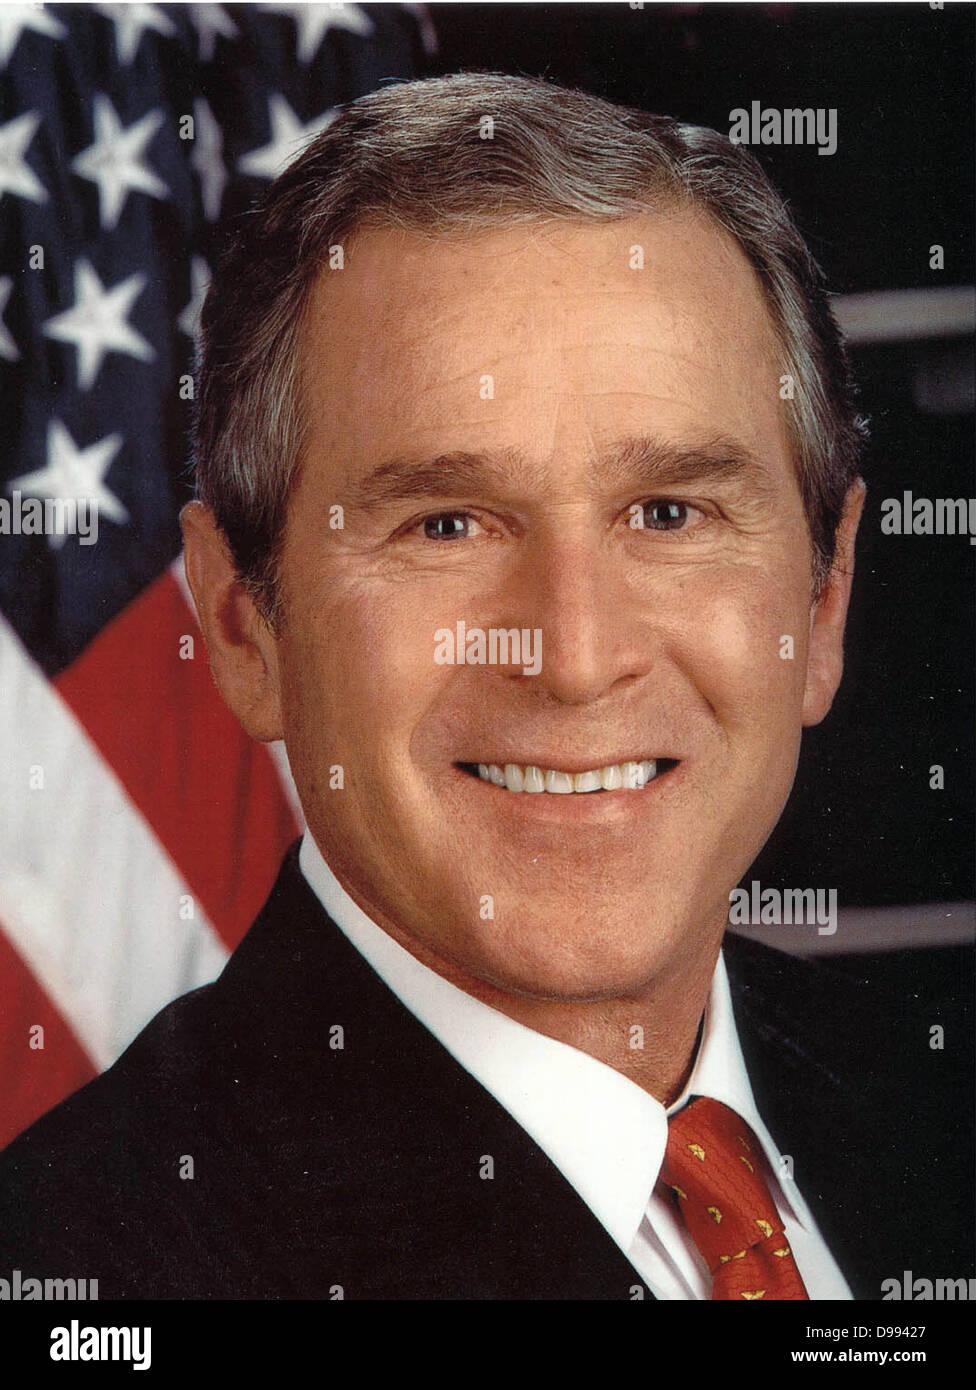 George Walker Bush (geb. 1946) 43. Präsident der Vereinigten Staaten 2001-2009. 46 Gouverneur von Texas 1995-2000. Mit Kopf und Schultern im Porträt mit Sternen und Streifen im Hintergrund. Us-amerikanischer Politiker der Republikaner Stockfoto